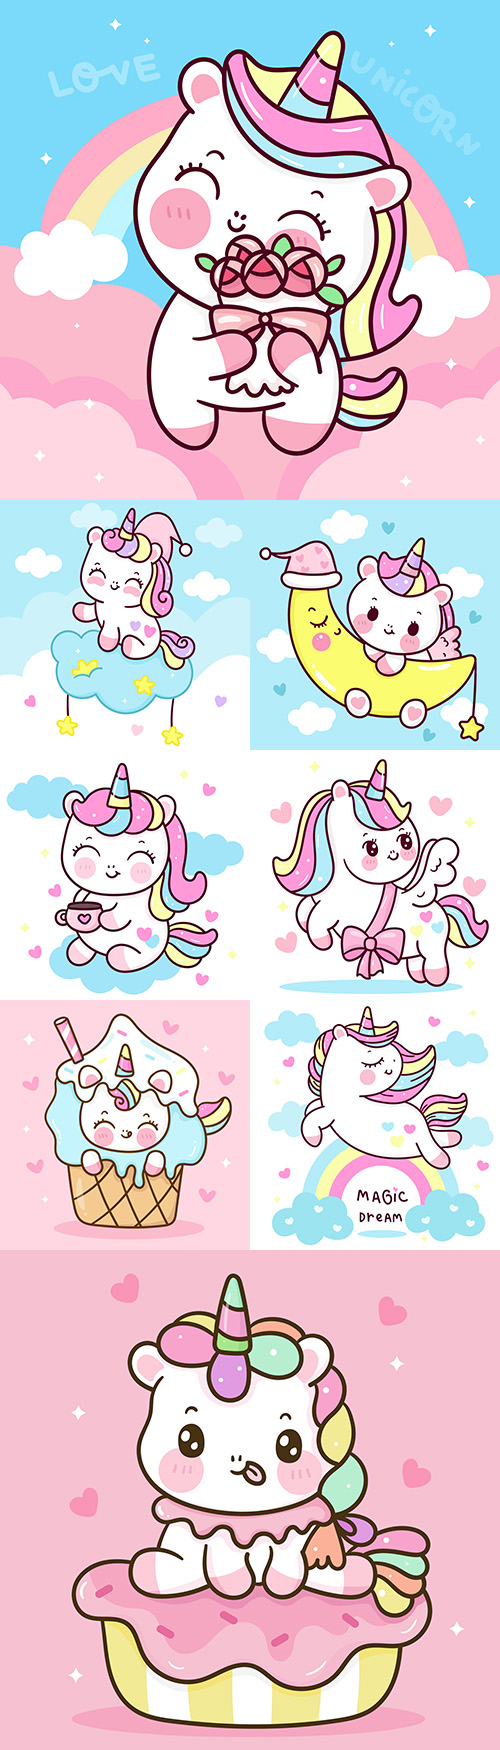 Cute cartoon unicorn on sweet cloud illustration
